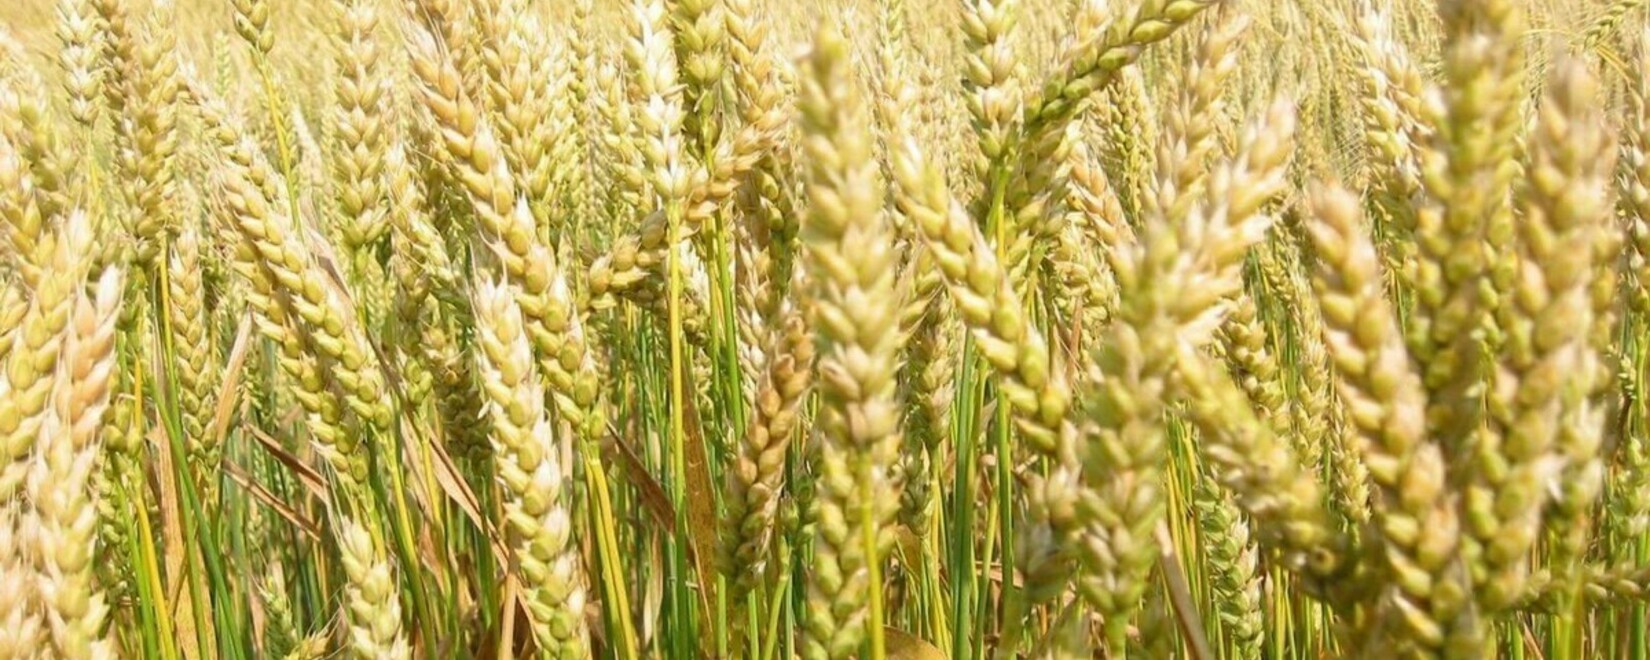 Состояние посевов яровой пшеницы в США ухудшилось